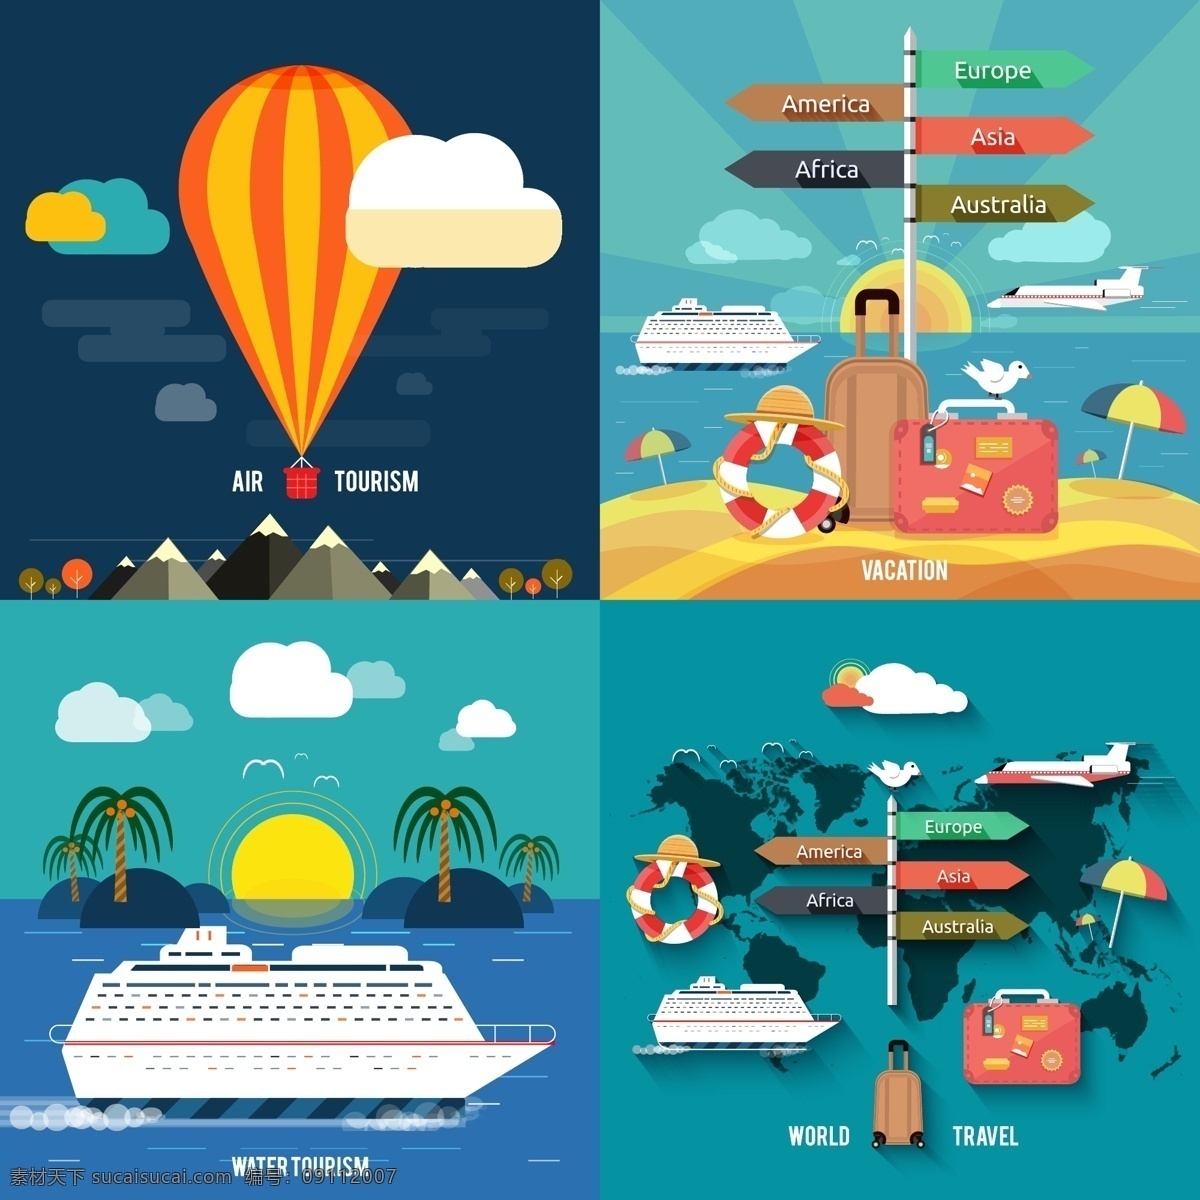 扁平 创意 旅行 插画 热气球 白云 旅行箱 油船 地图 大海 风景